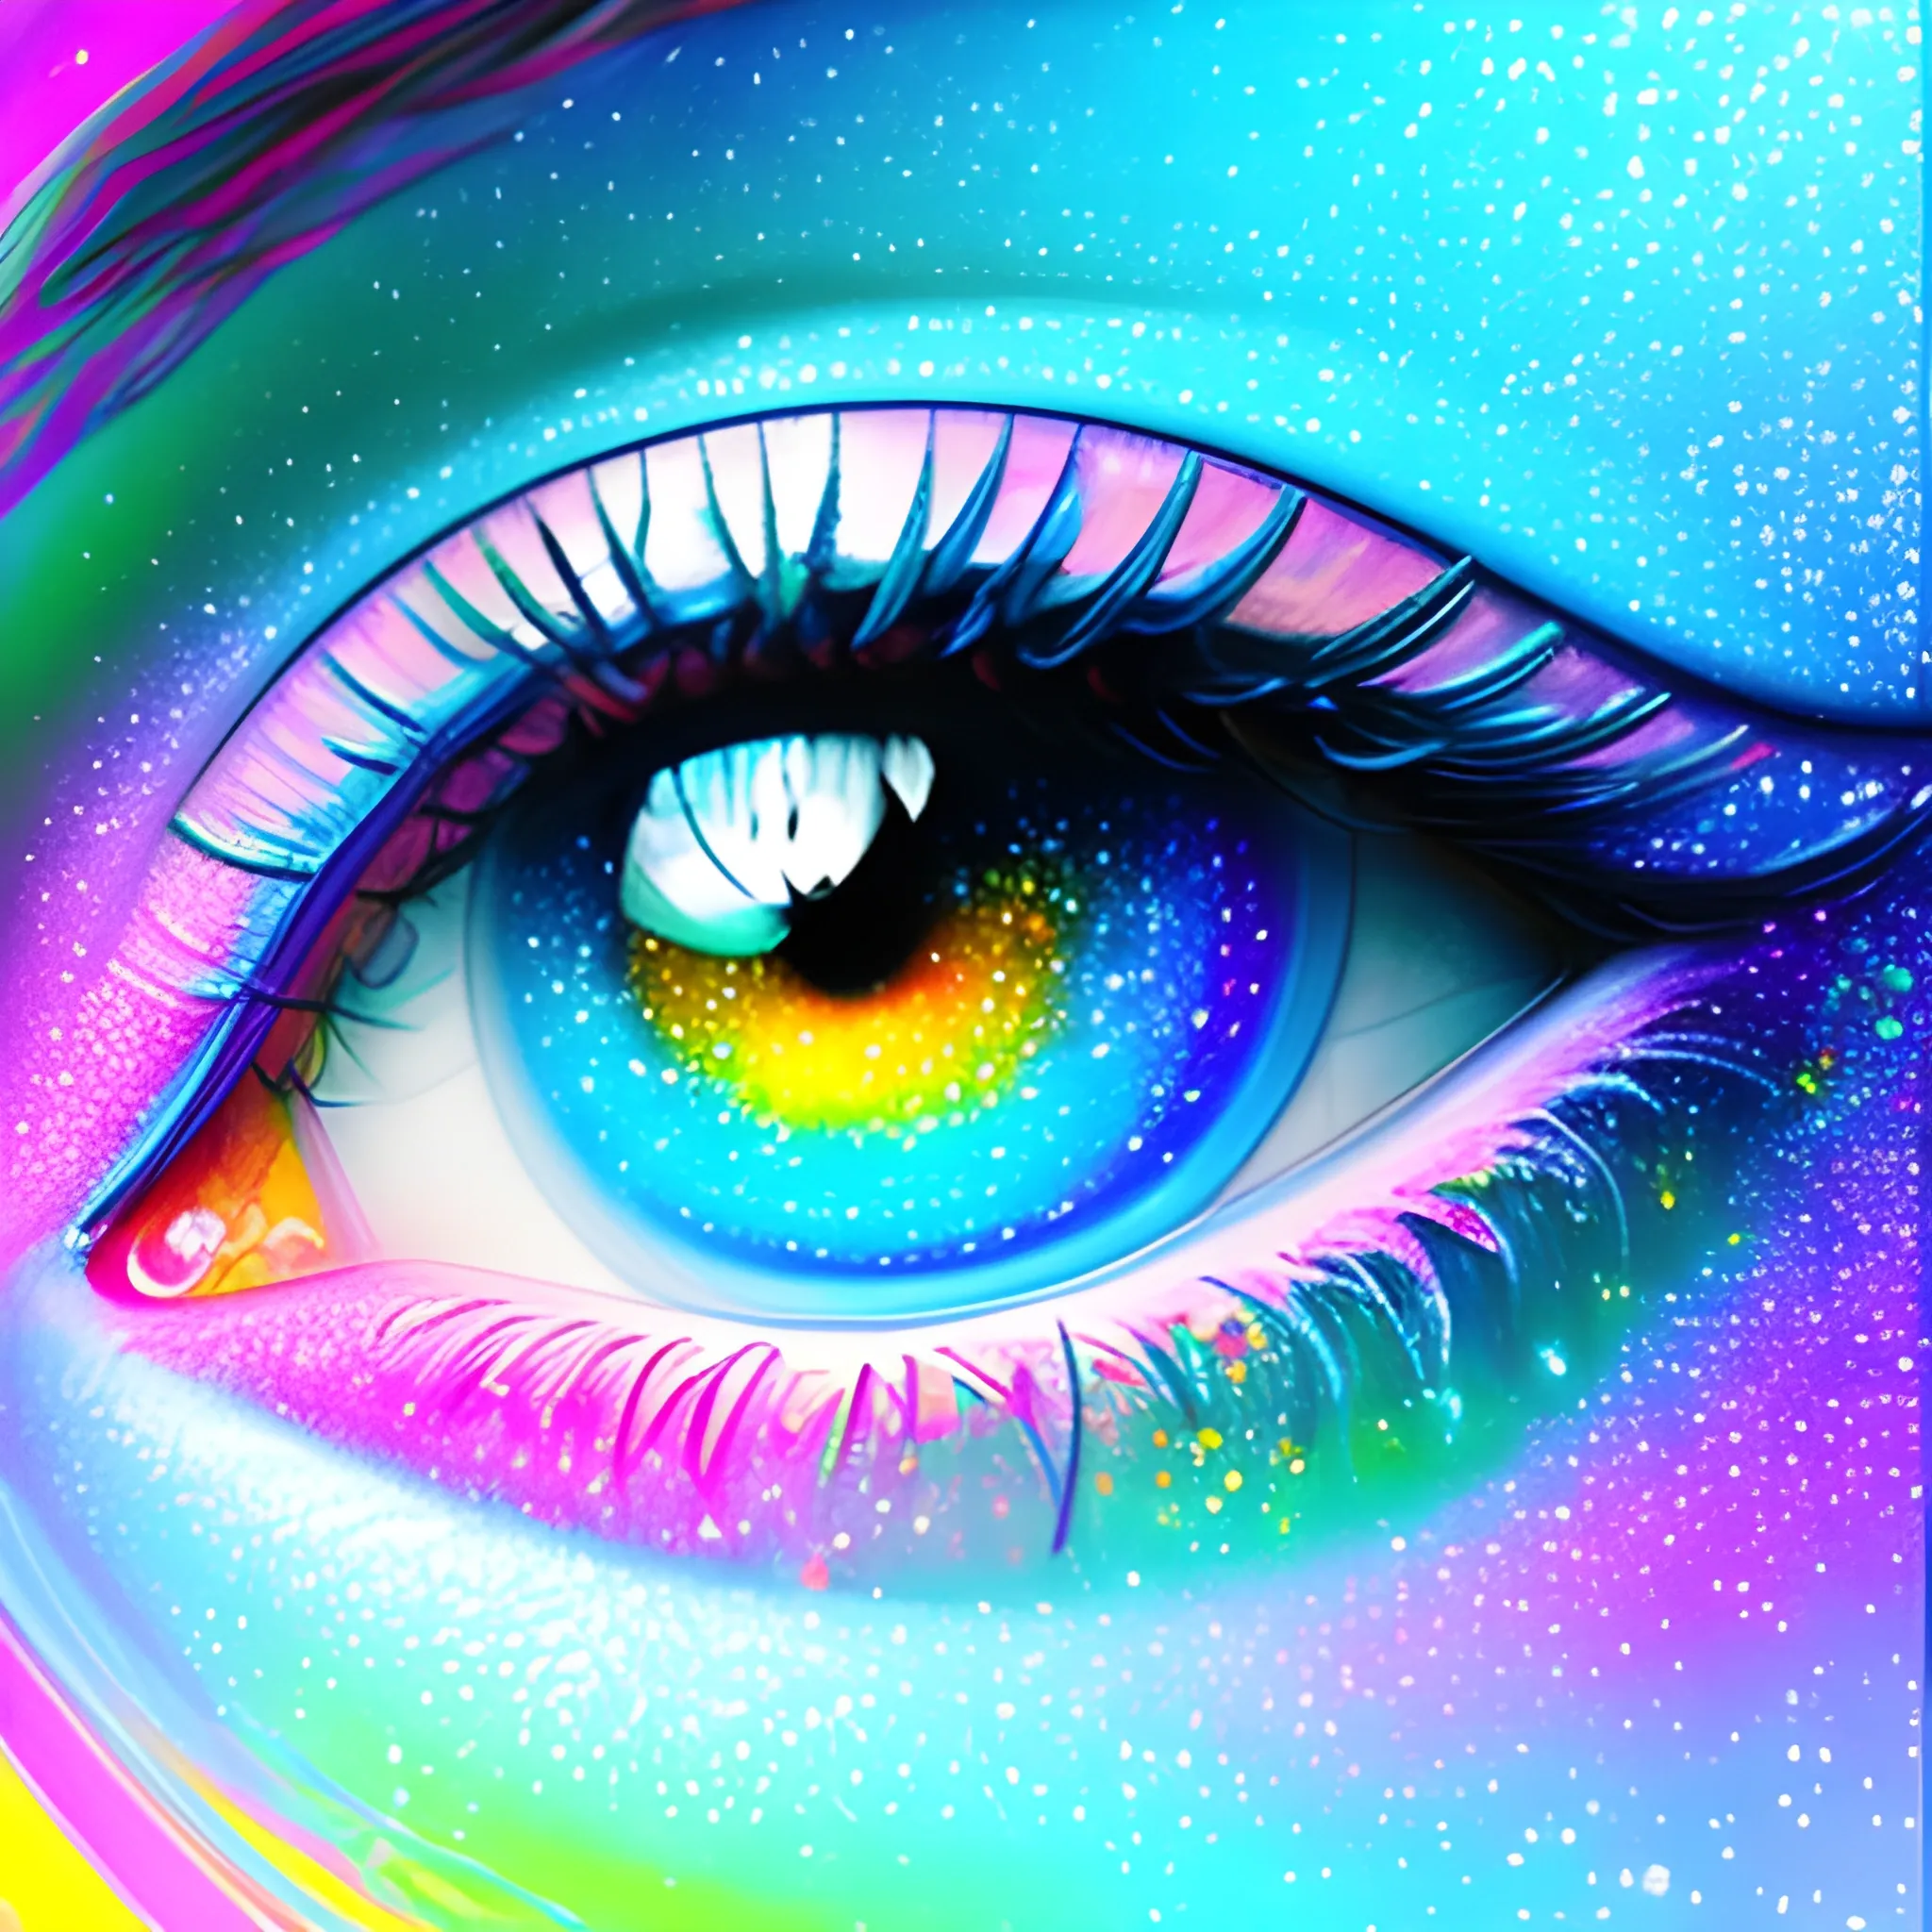 “Colorful image, creativity, technology, corporative, eyes, glit ...